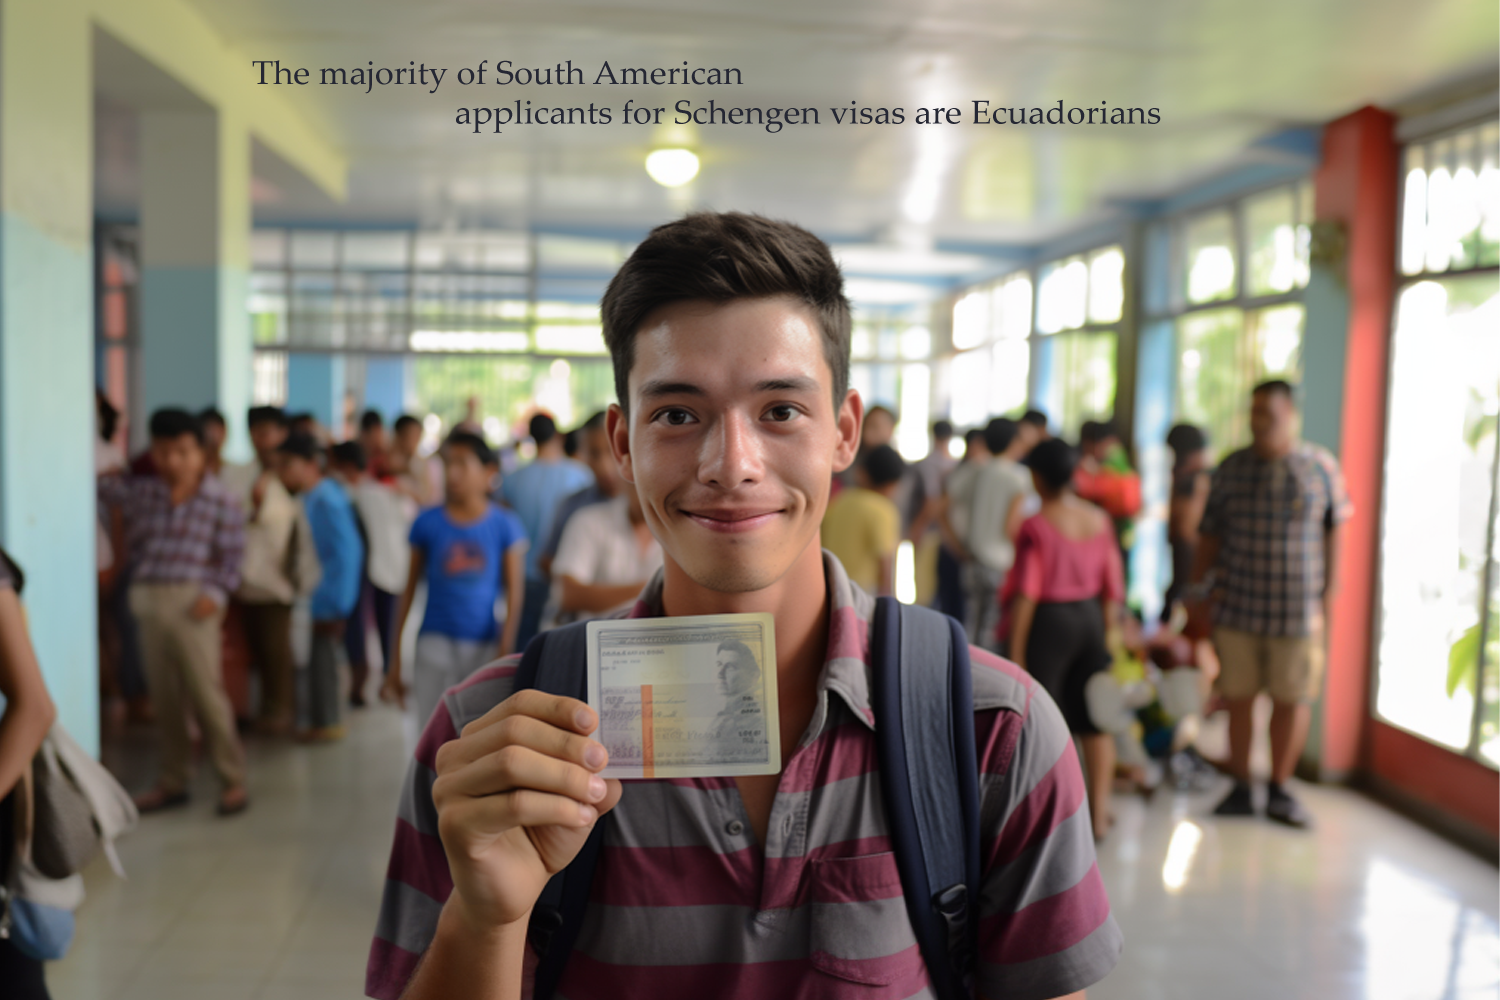 The majority of South American applicants for Schengen visas are Ecuadorians.